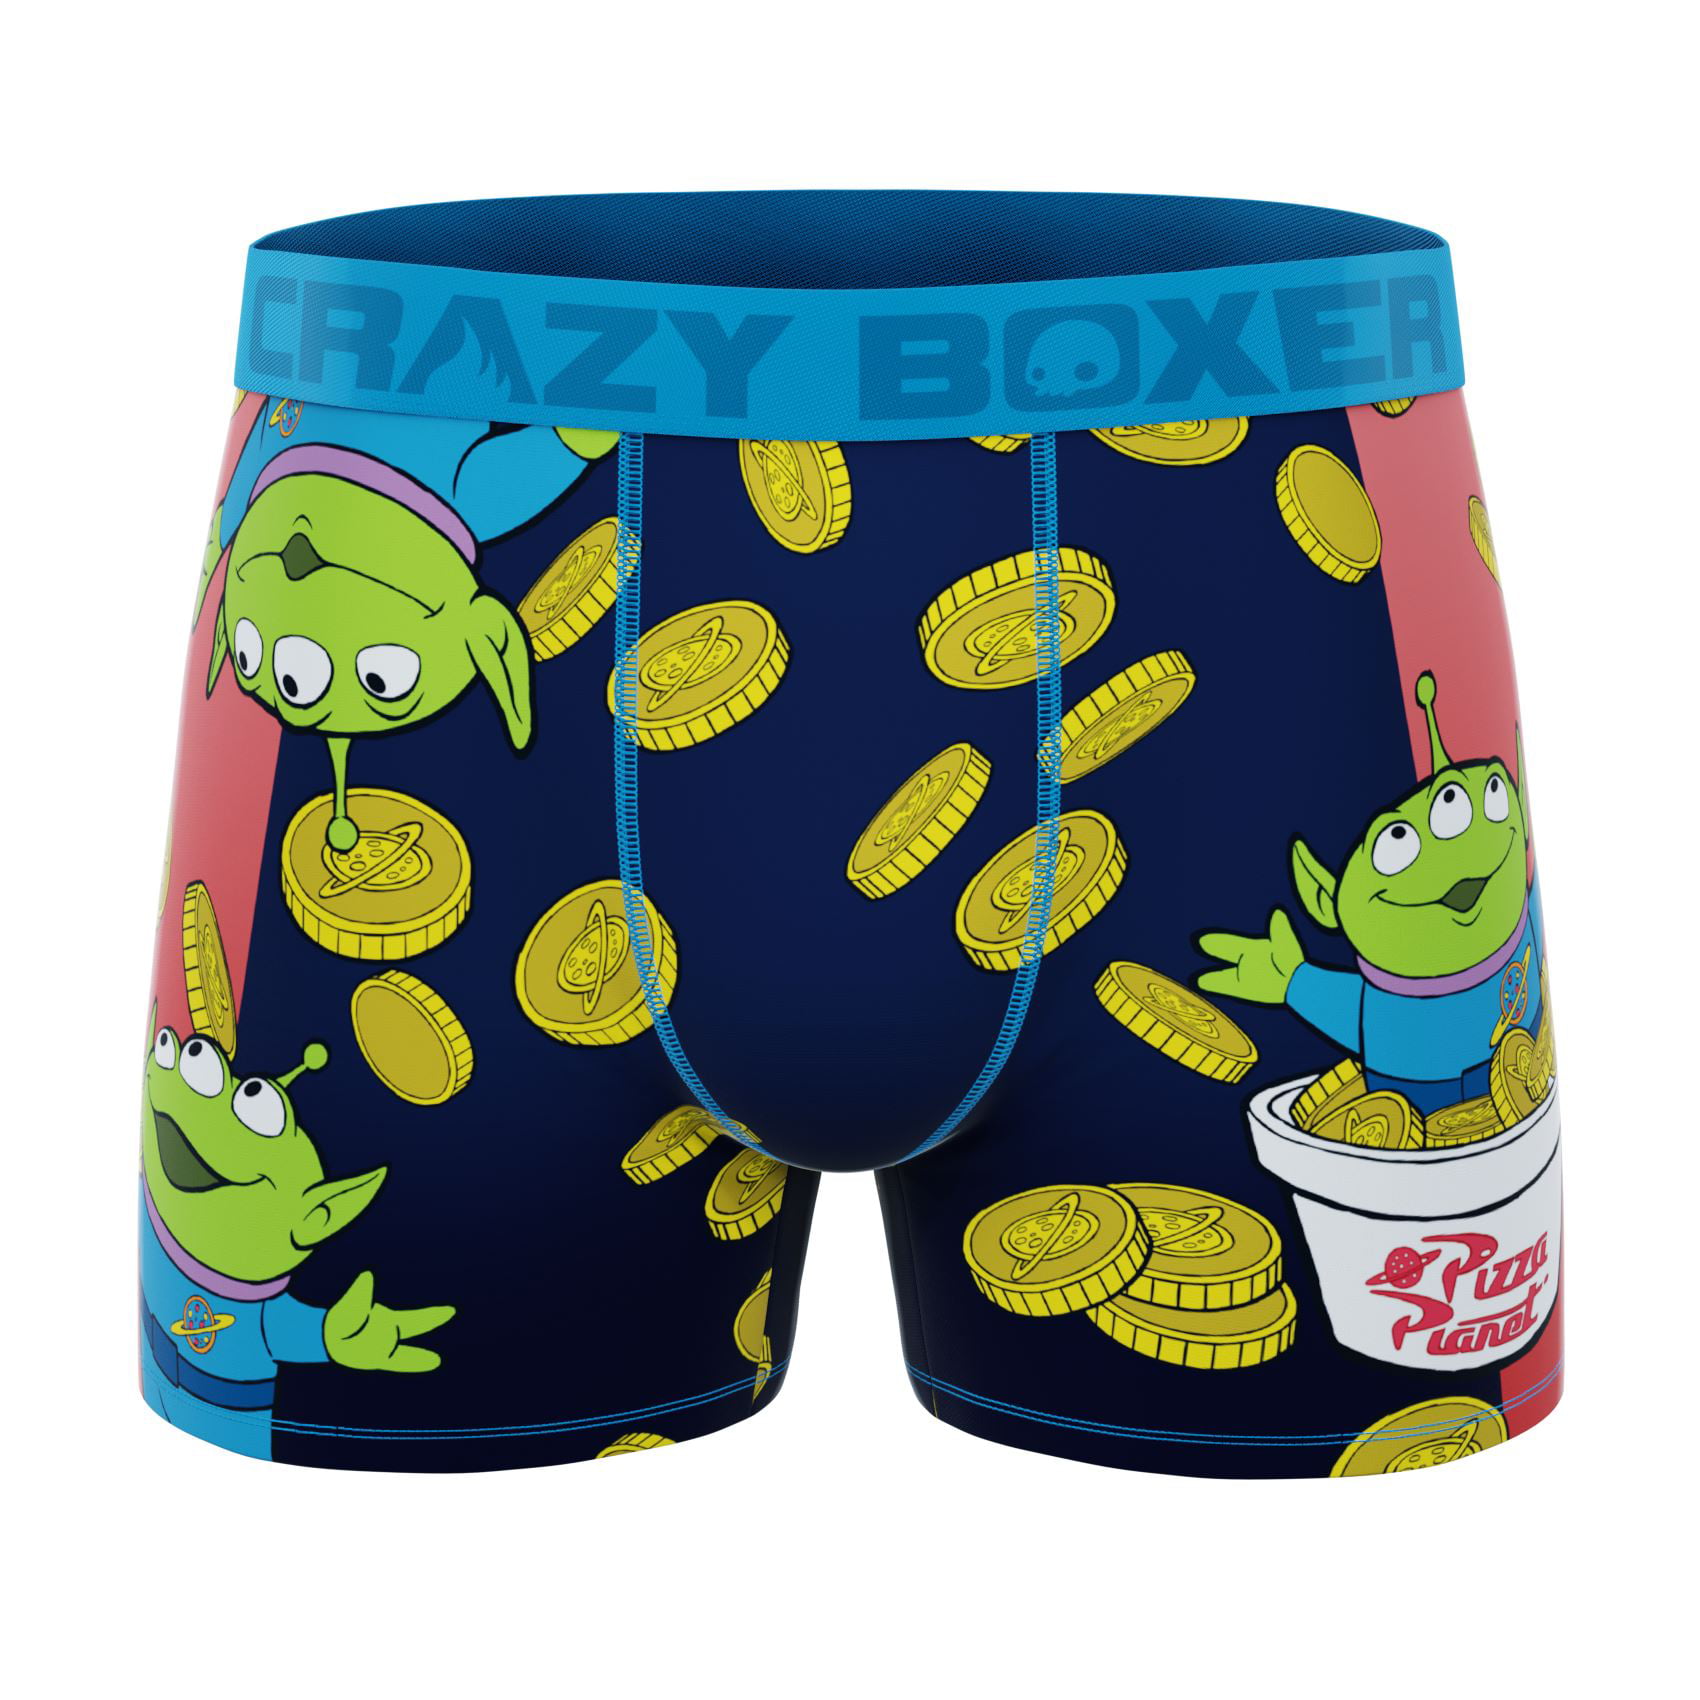 CRAZYBOXER Men's Underwear Toy Story Soft Lightweight Boxer Brief Stretch 